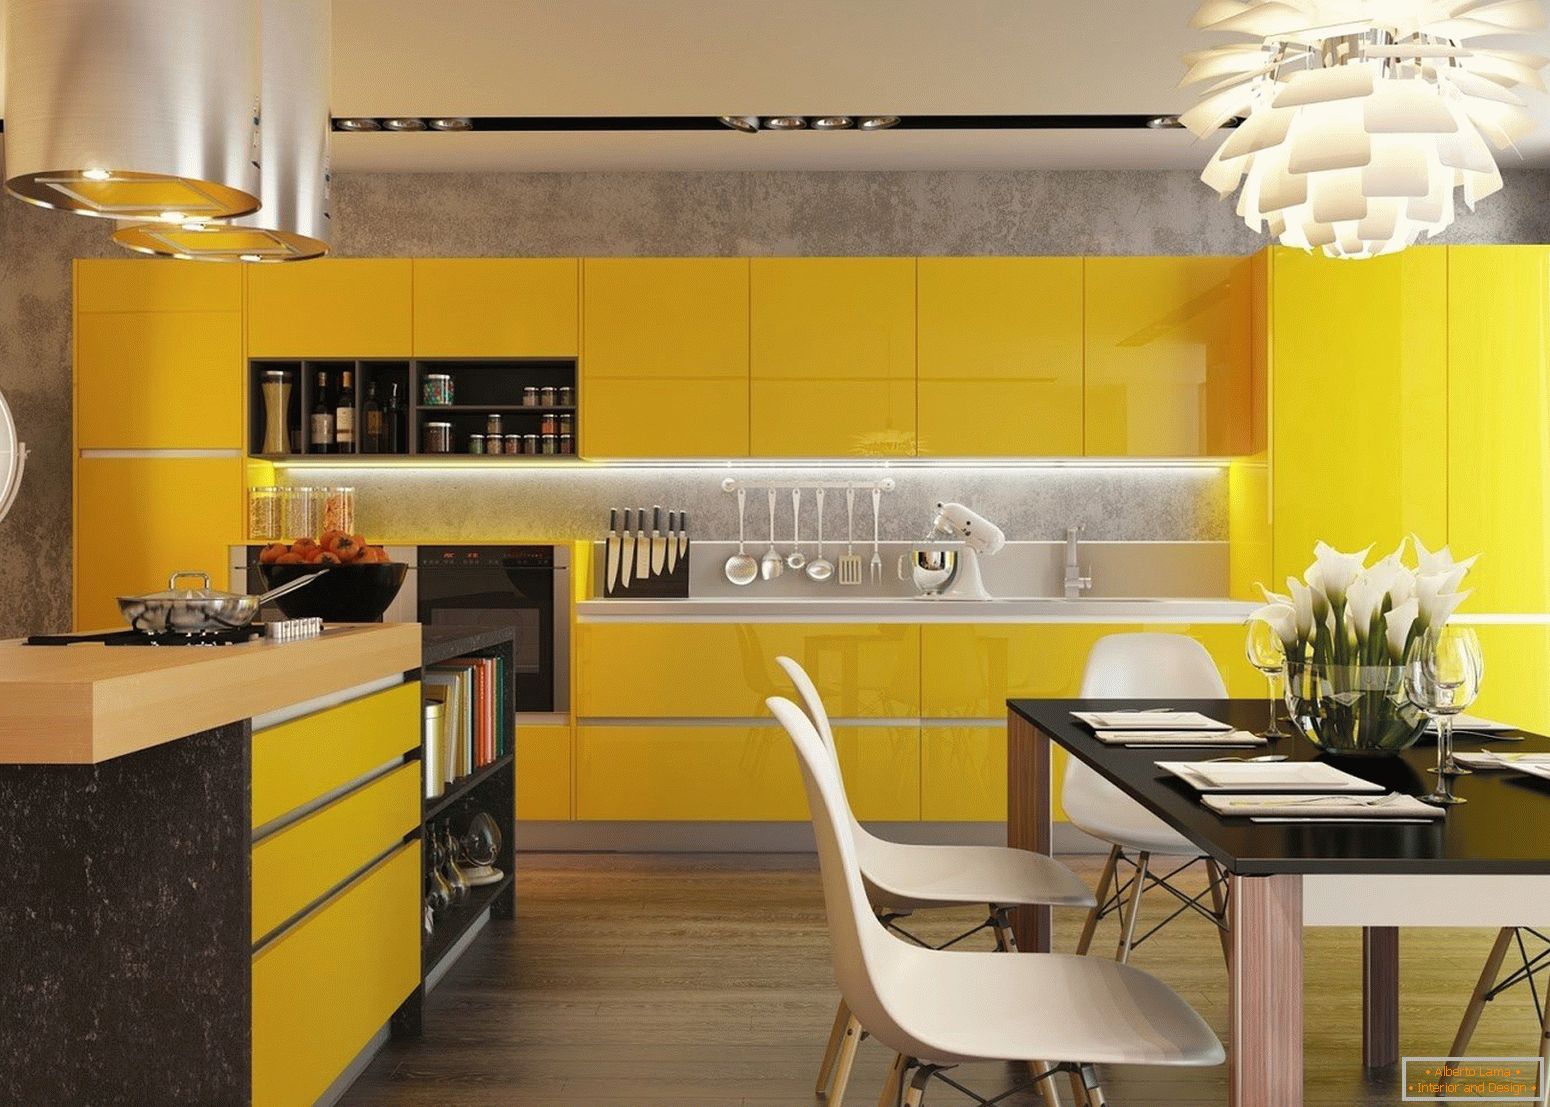 Kuchnia с желтыми фасадами и черным столом